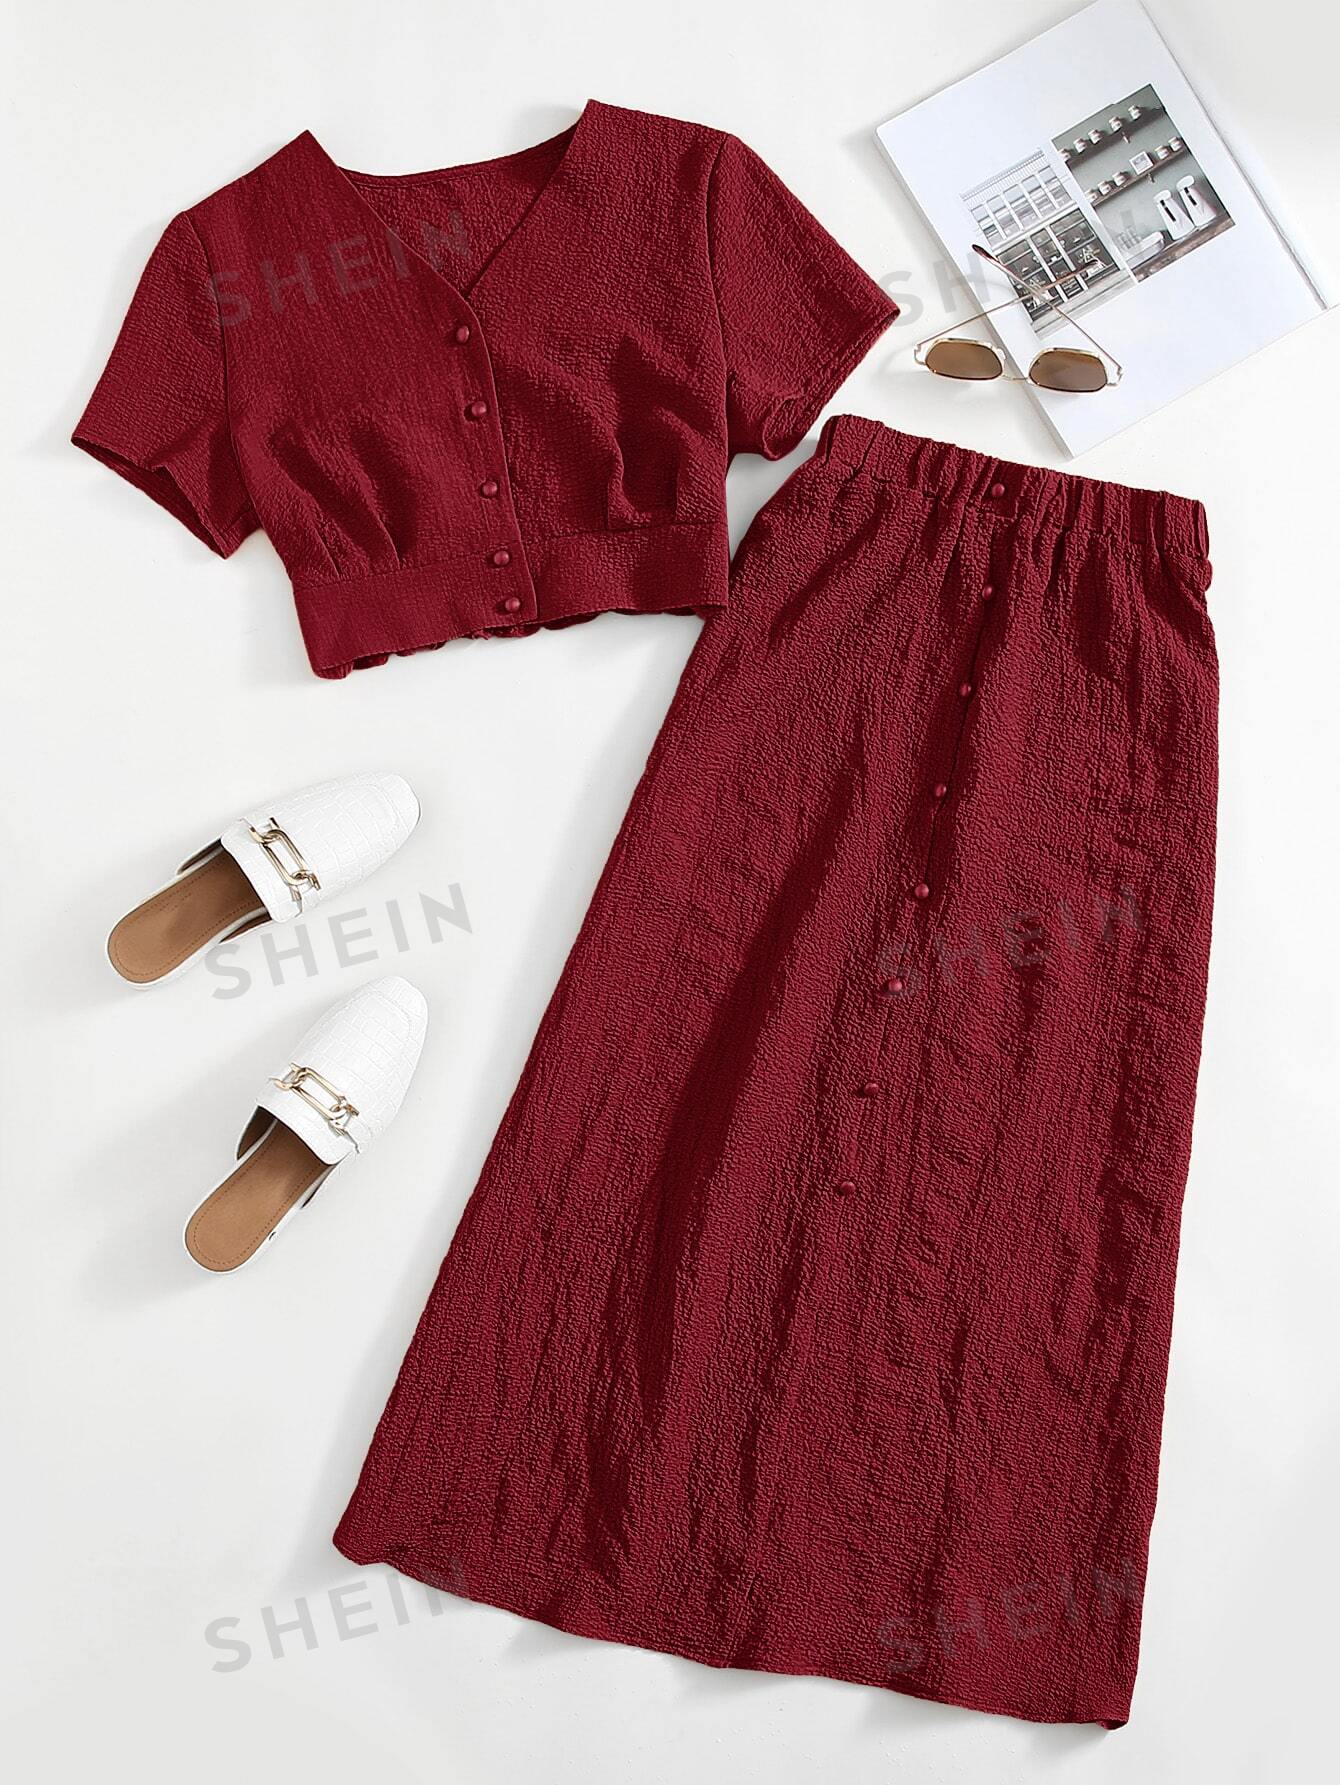 SHEIN Mulvari однотонный текстурированный повседневный комплект из двух предметов, бургундия детская летняя блузка и юбка розовая блузка и юбка